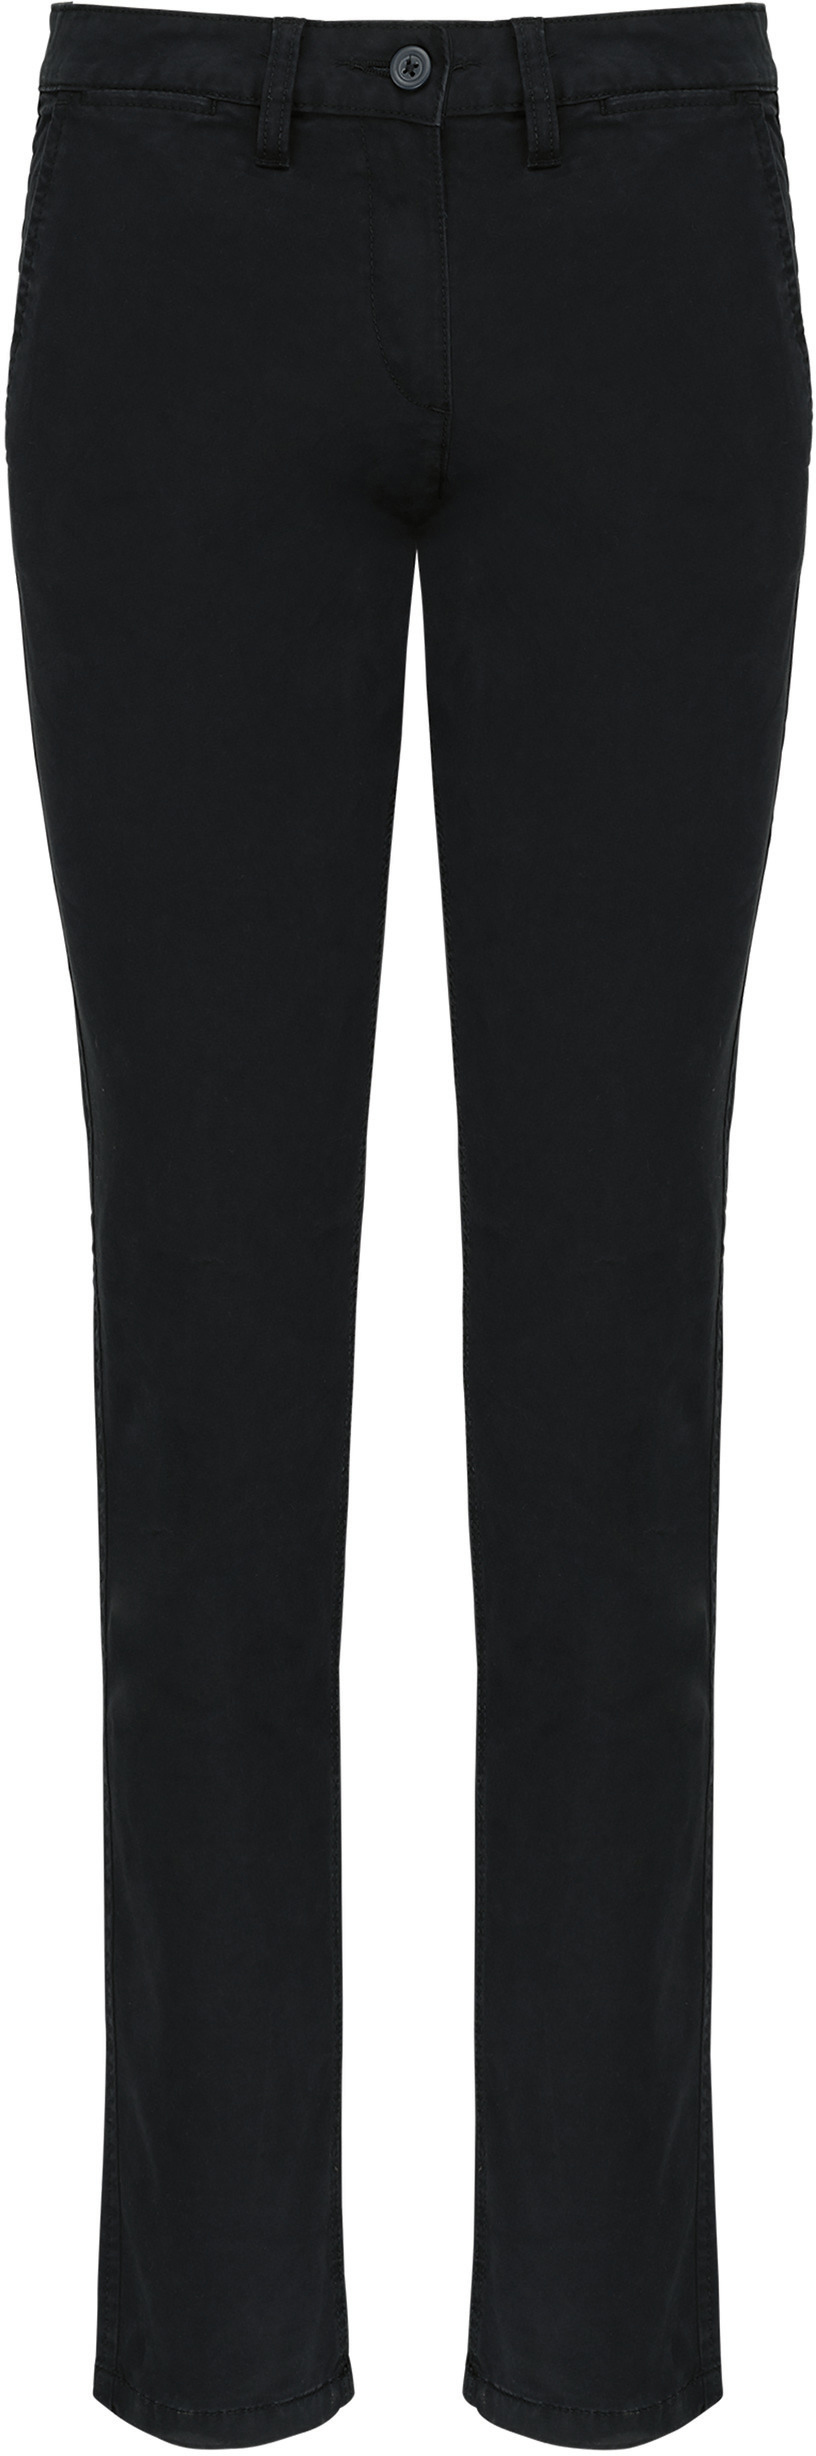 Dámské kalhoty CHINO K741 Barva: černá, Velikost: 48